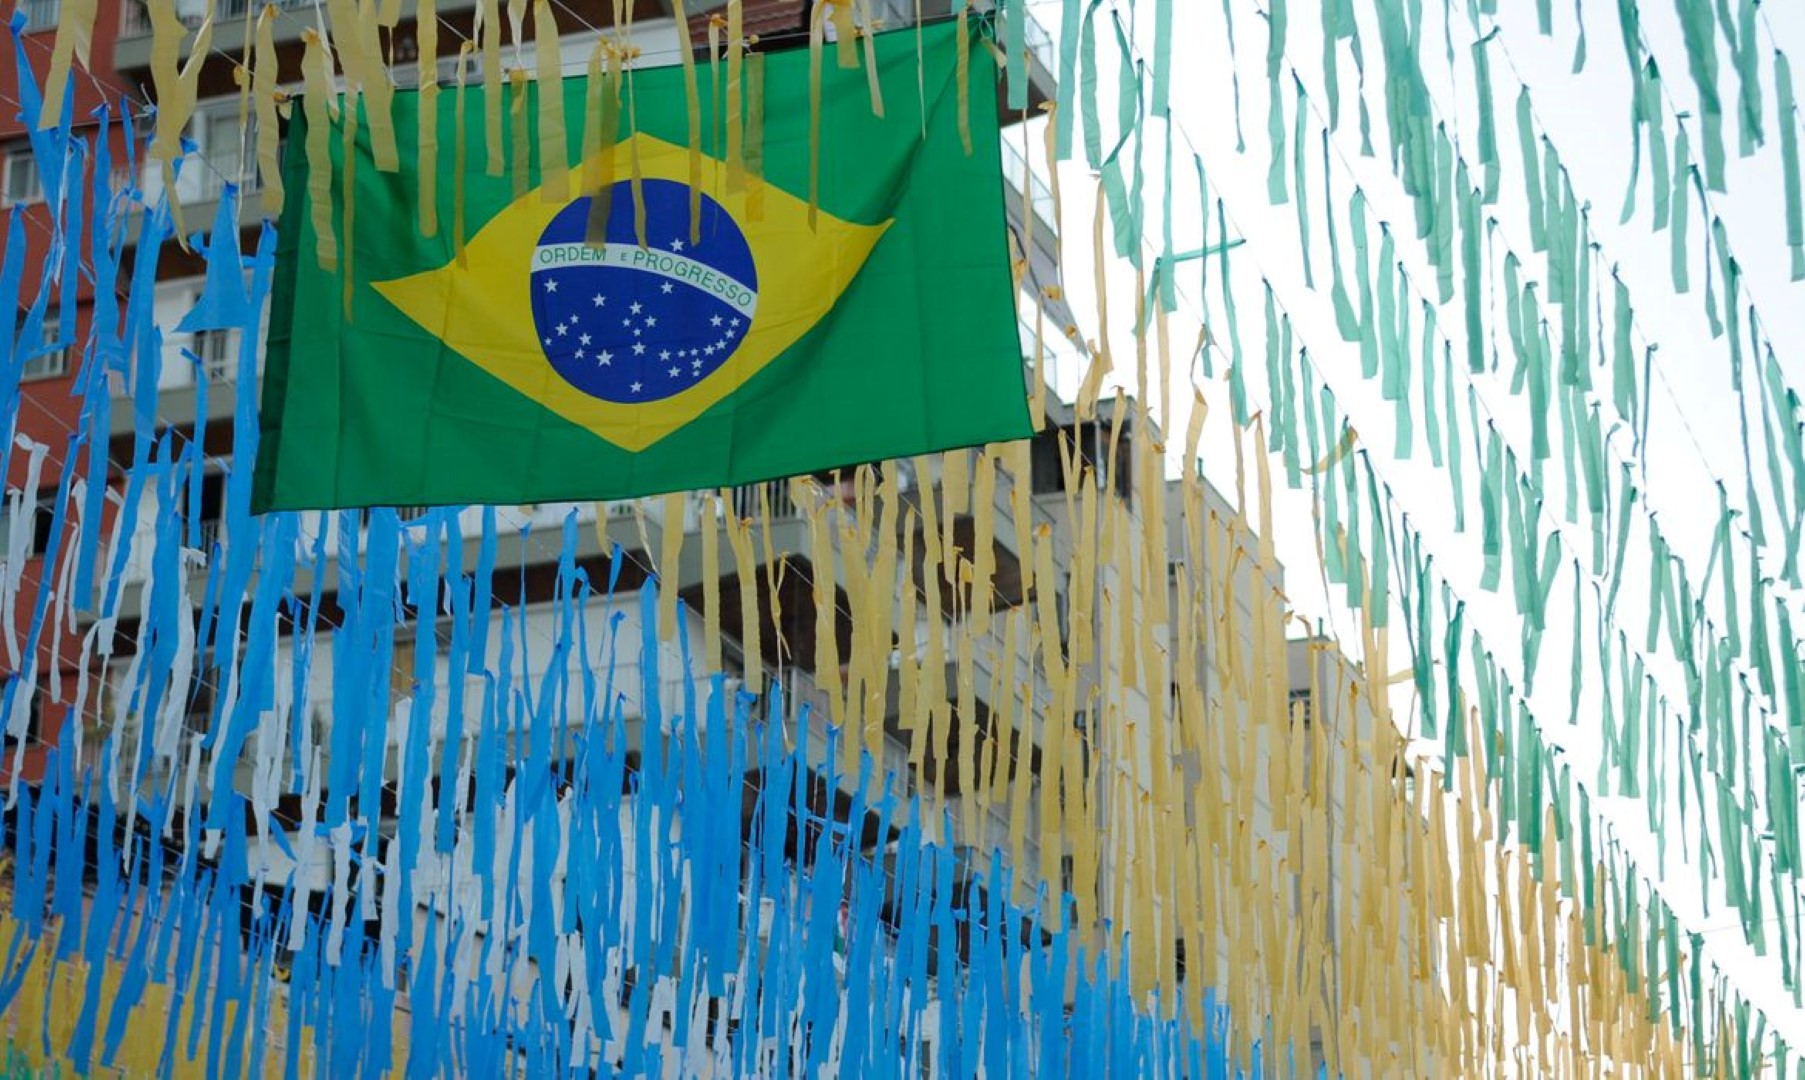 Órgãos públicos terão horário alterado em dias de jogos do Brasil